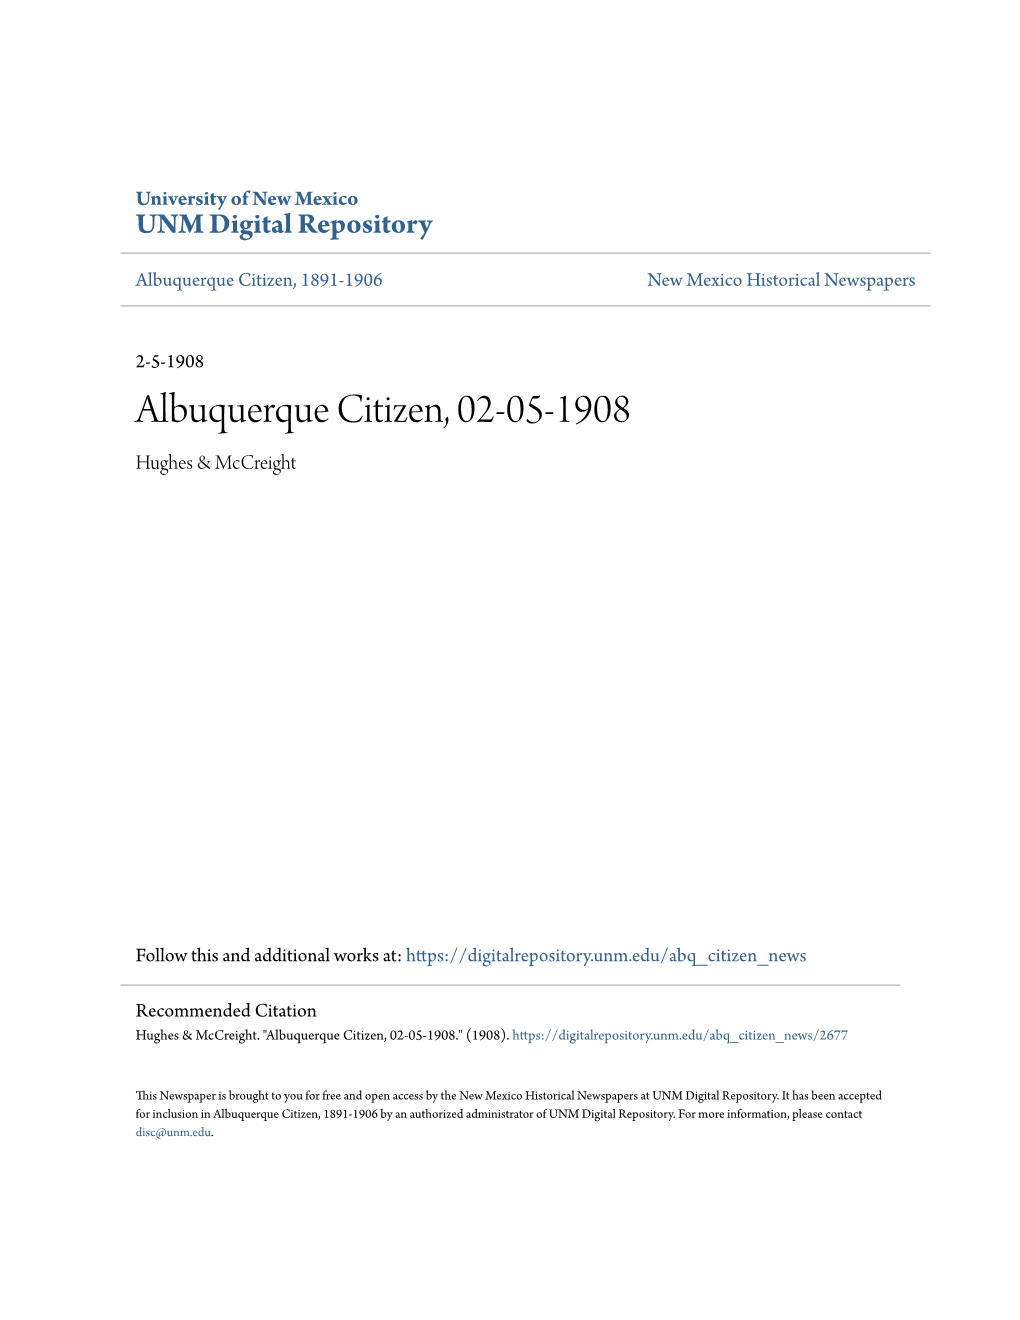 Albuquerque Citizen, 02-05-1908 Hughes & Mccreight